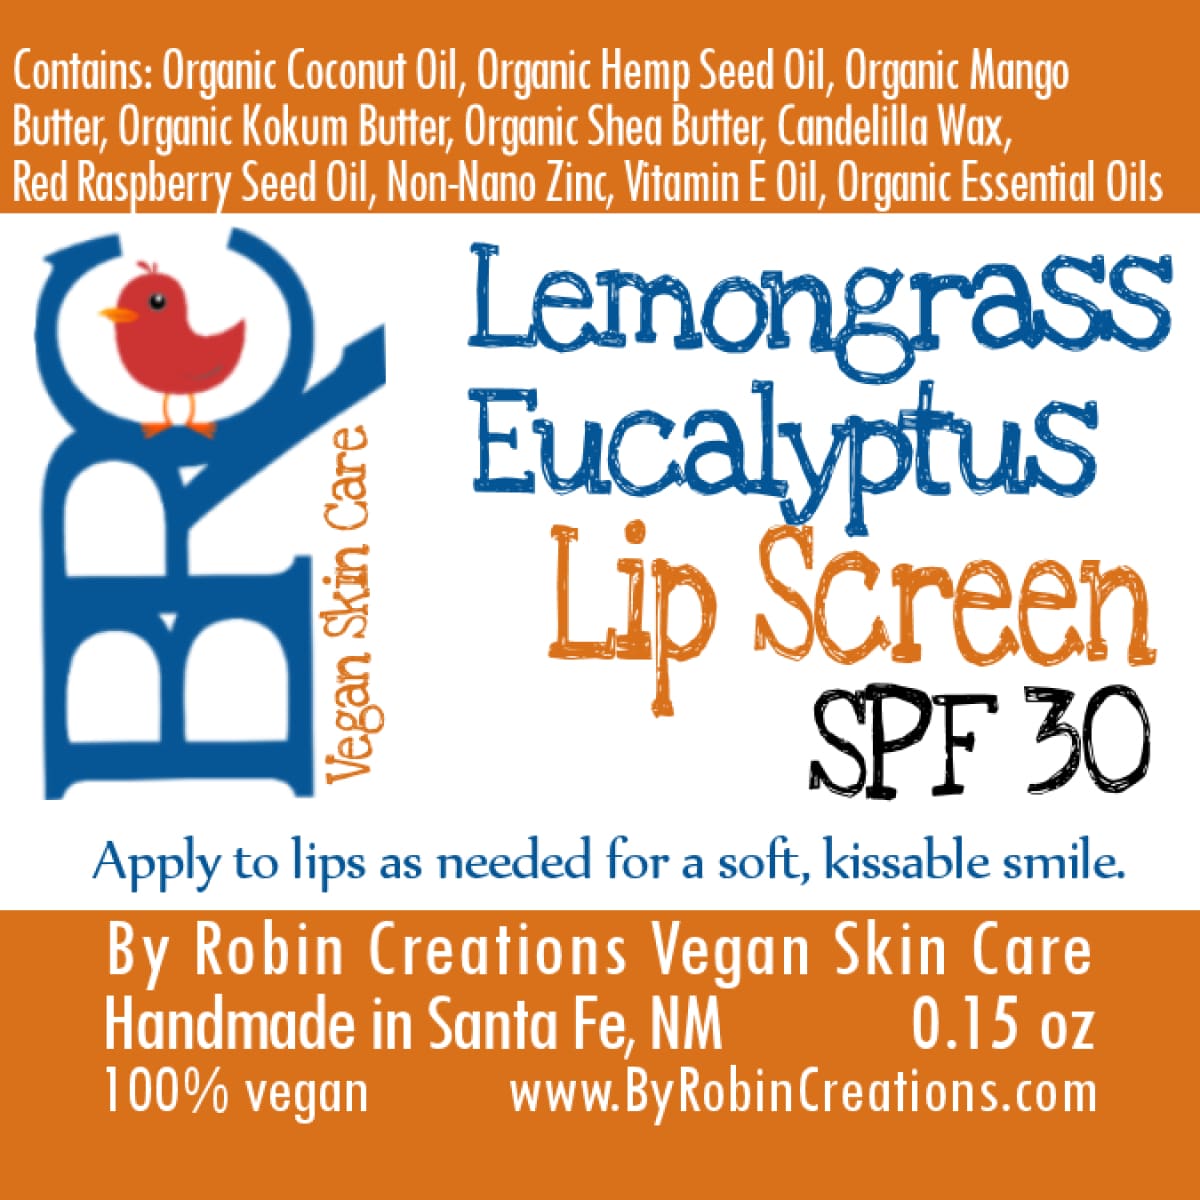 Vegan Natural SPF 30 Lip Screen